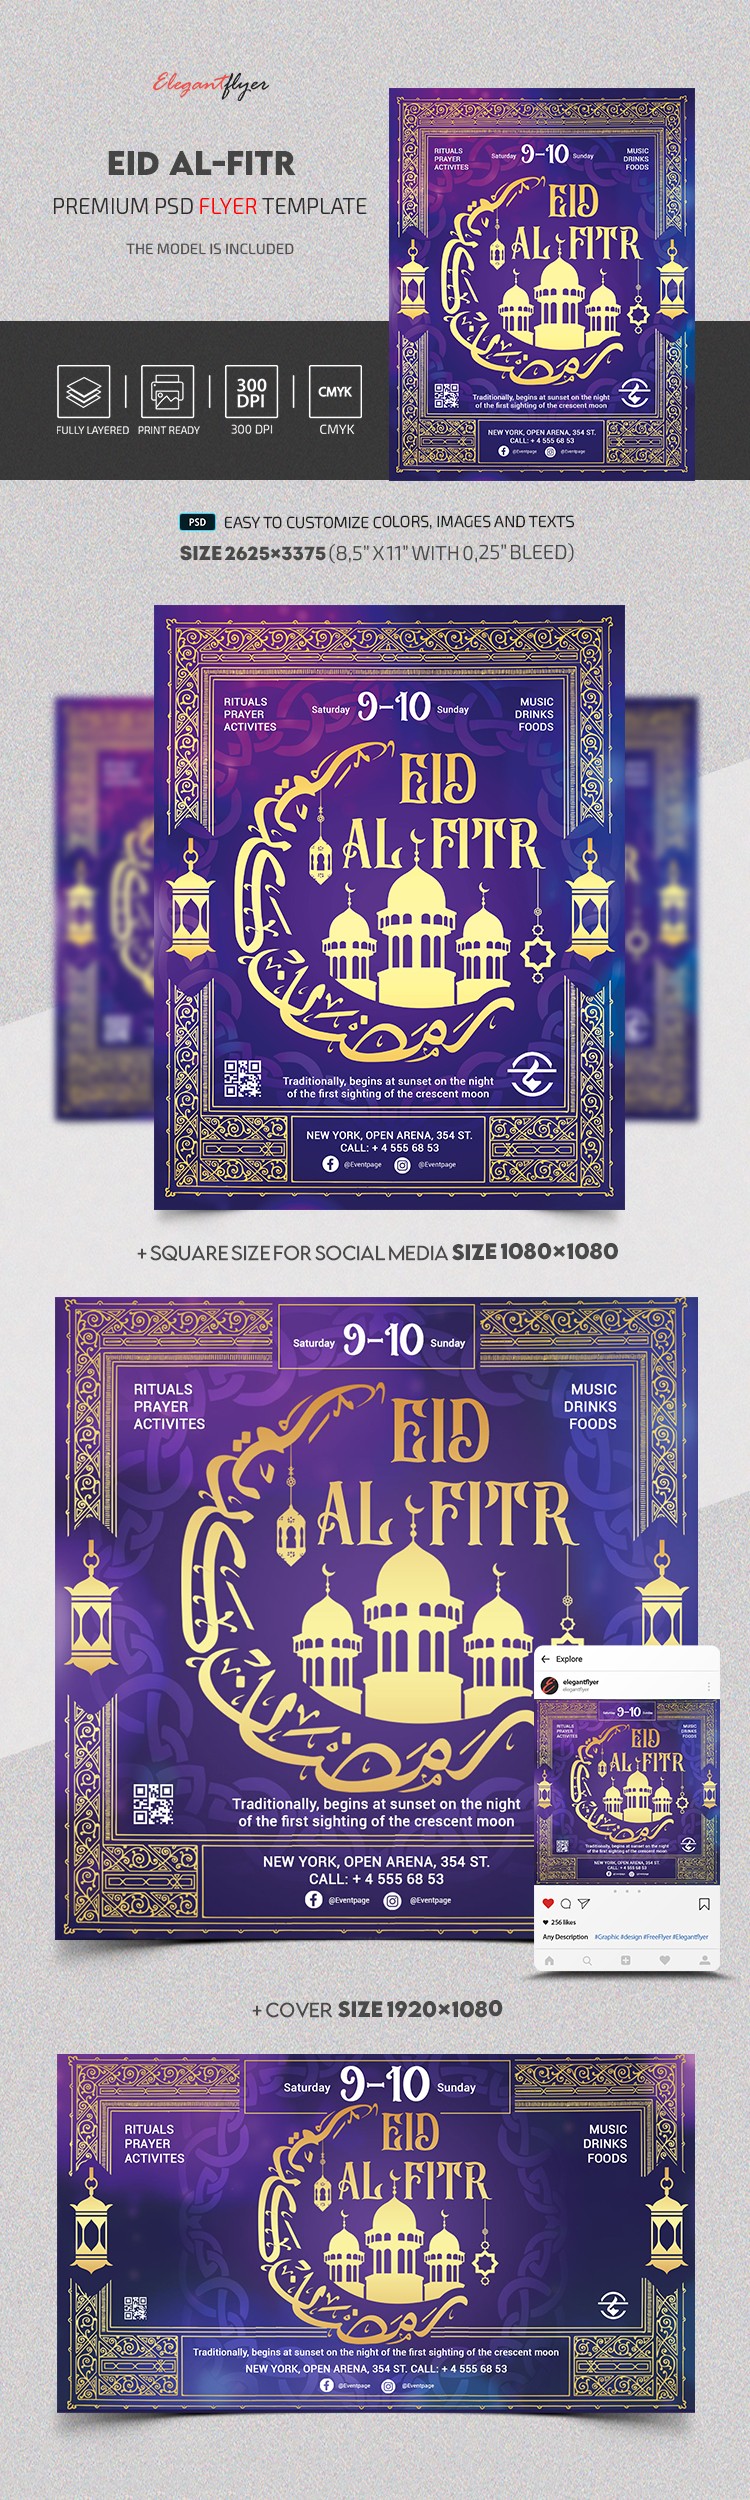 Eid al-Fitr by ElegantFlyer